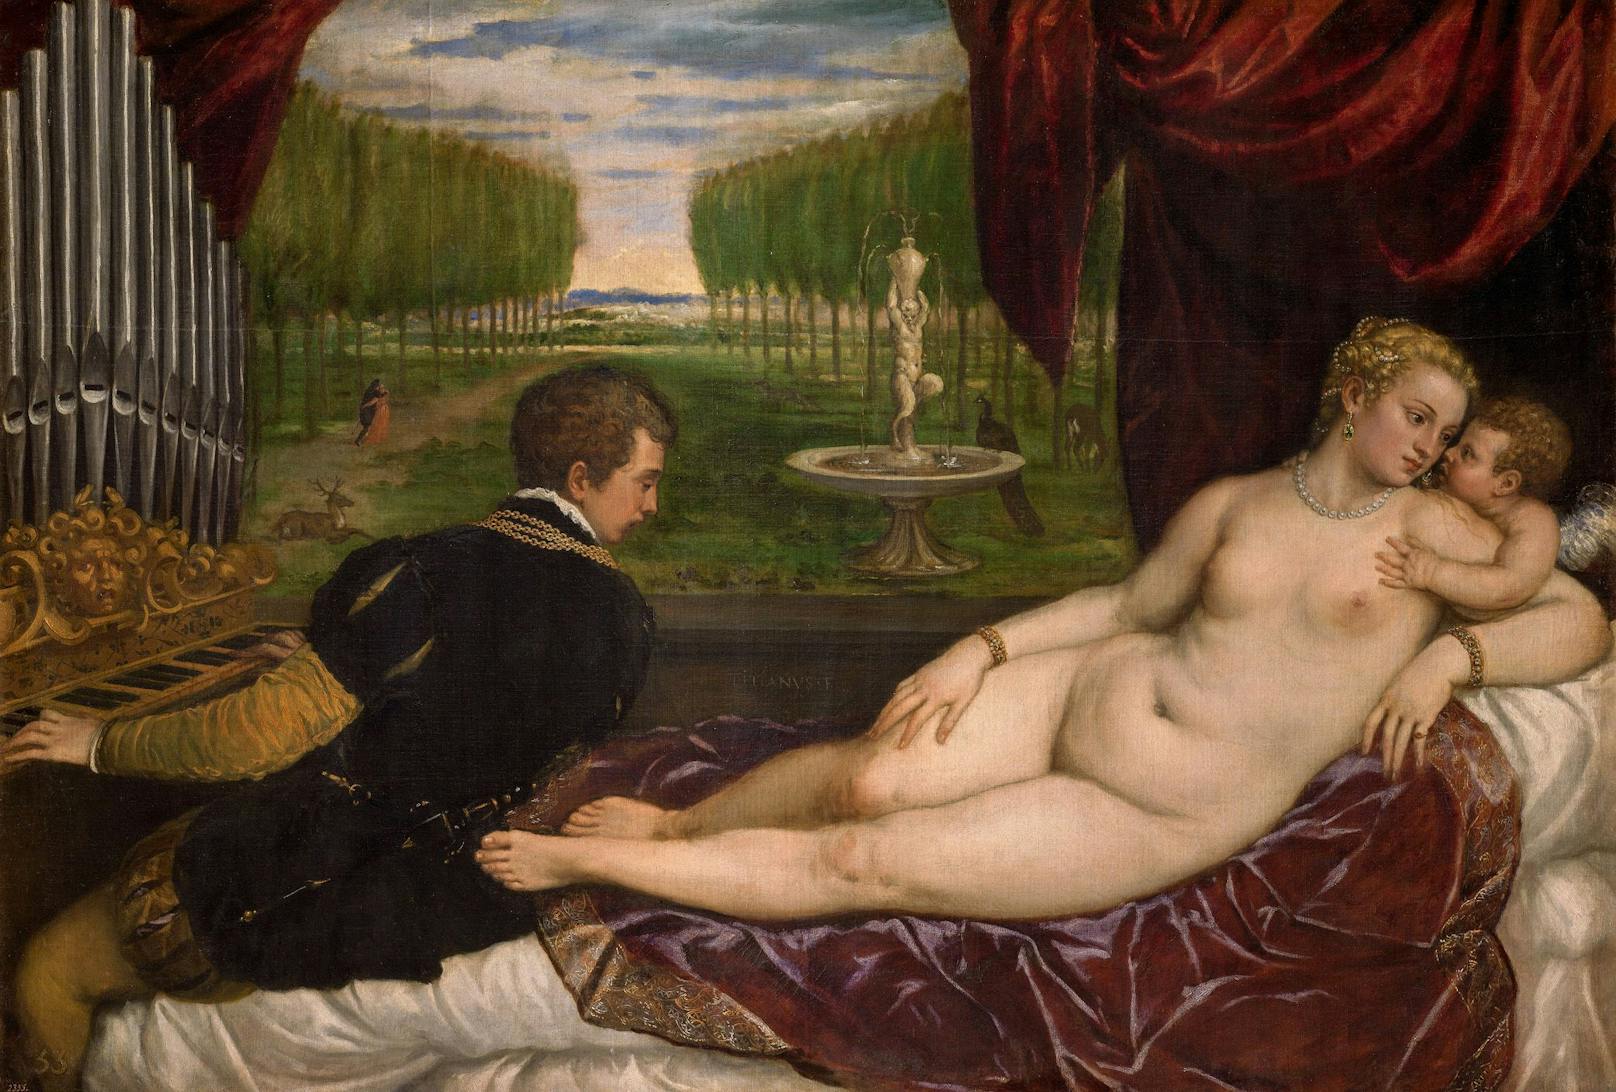 "Venus mit Orgelspieler und Cupido"